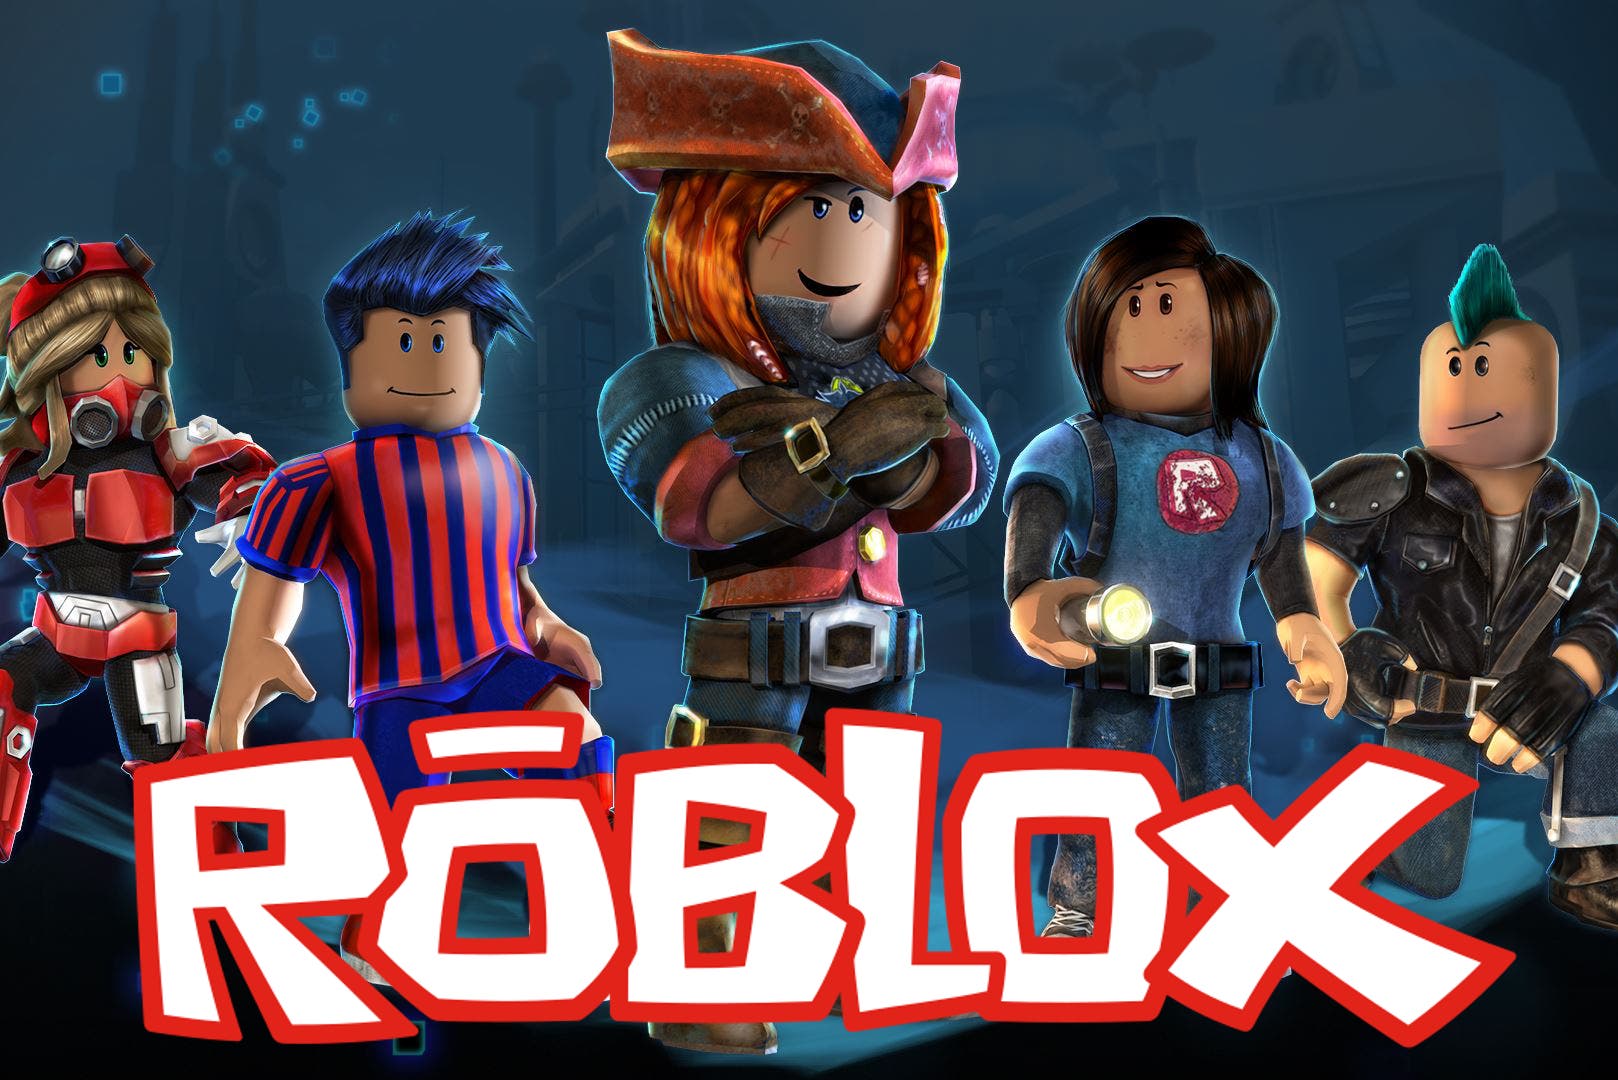 Cómo descargar y los requisitos para jugar a Roblox en Android